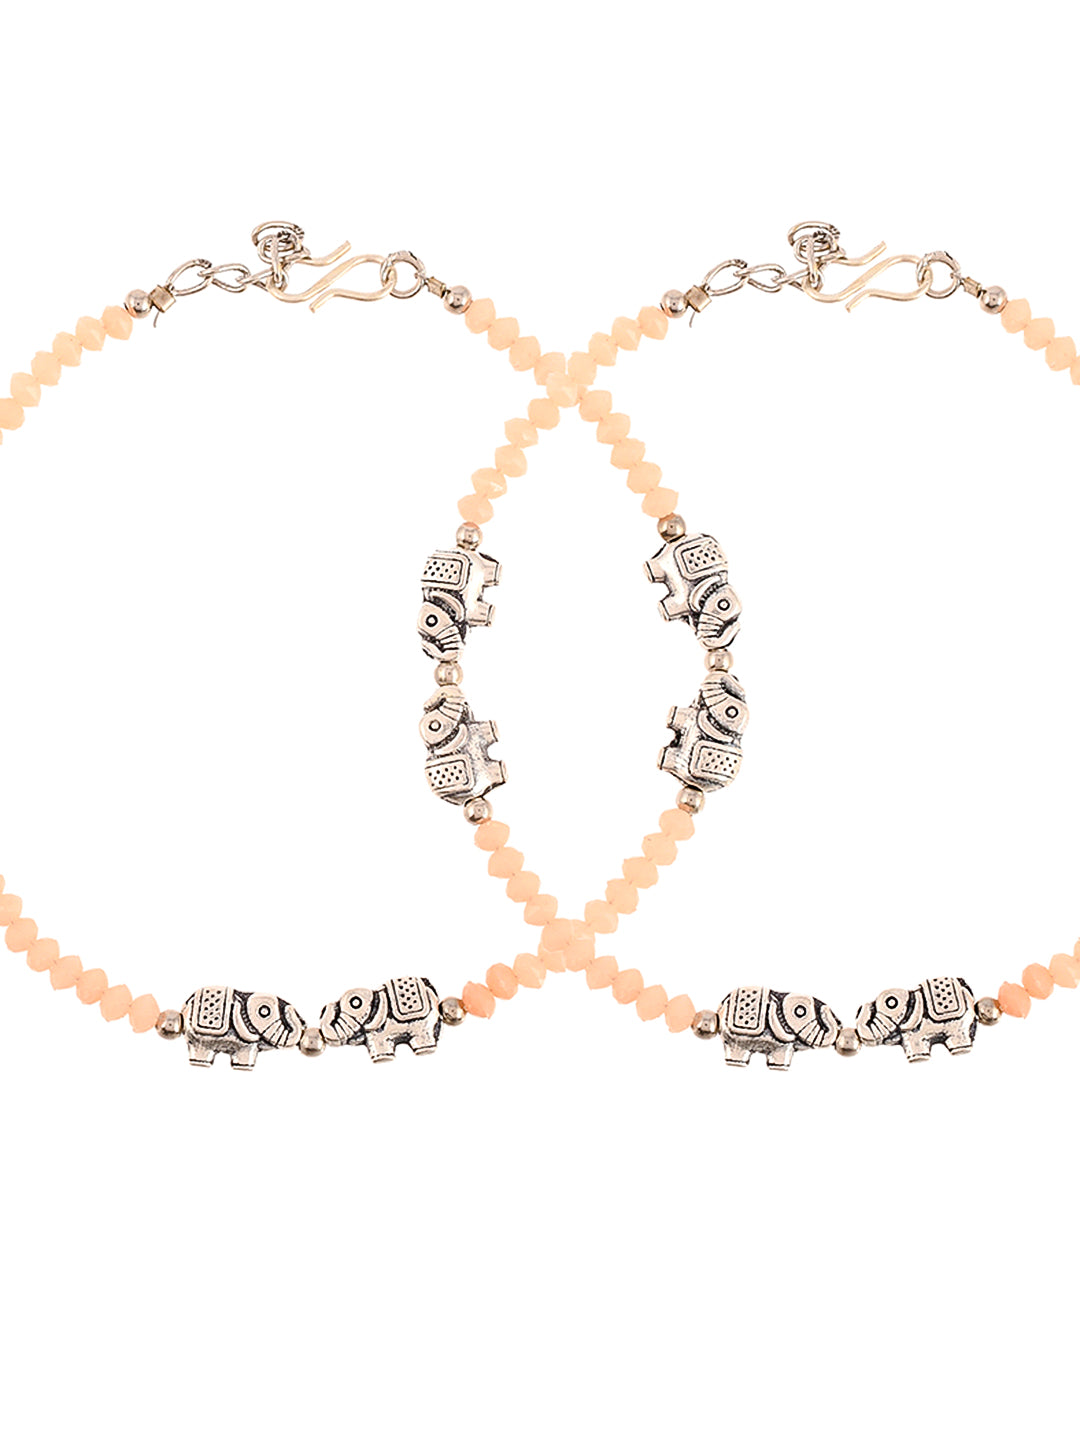 Oxidized peach Anklet Bracelet with Elephant Charm